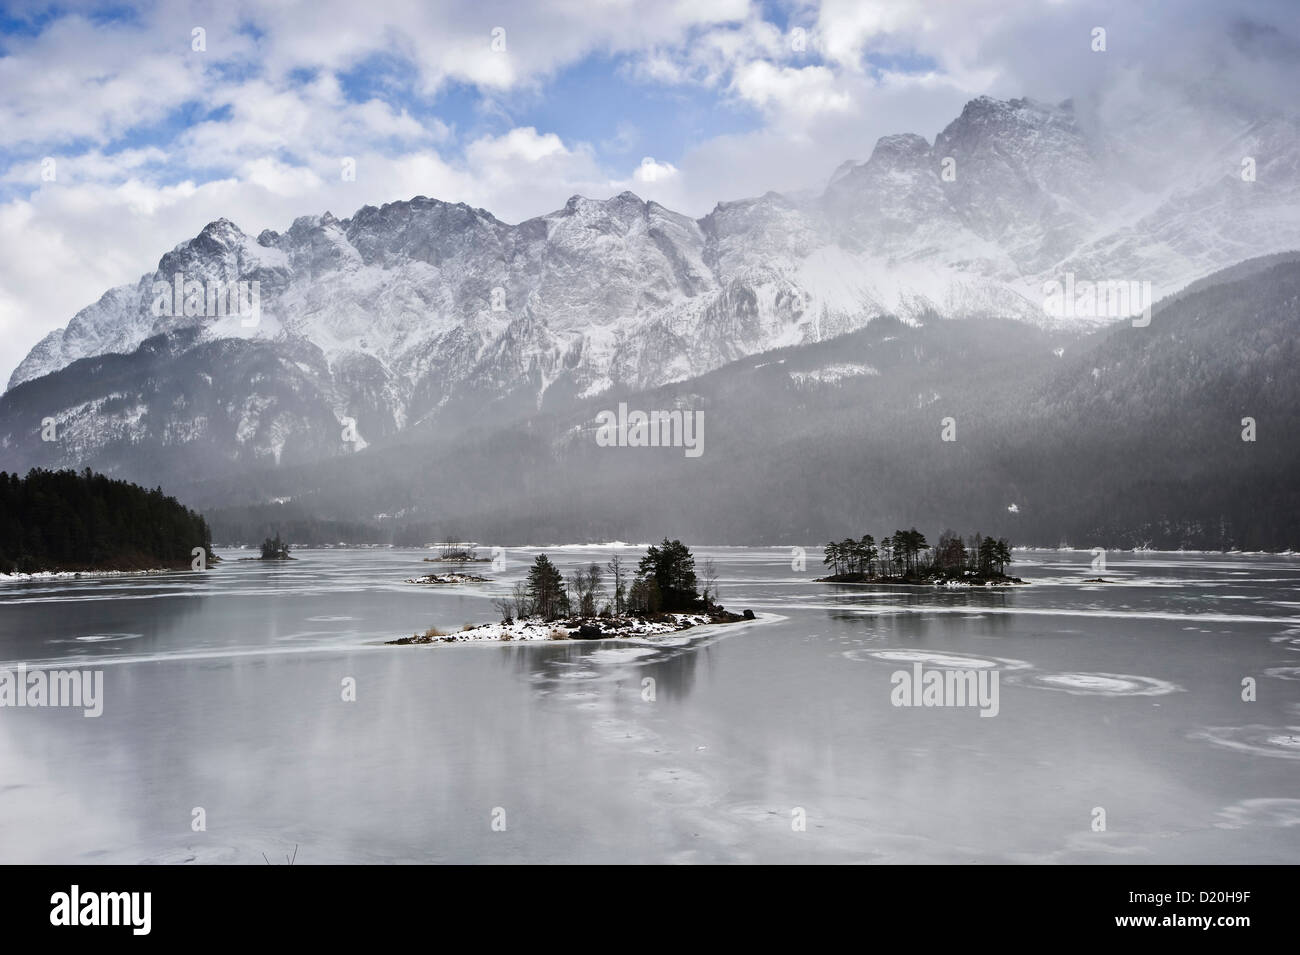 Eibsee and Zugspitze in winter, Garmisch-Partenkirchen, Bavaria, Germany Stock Photo